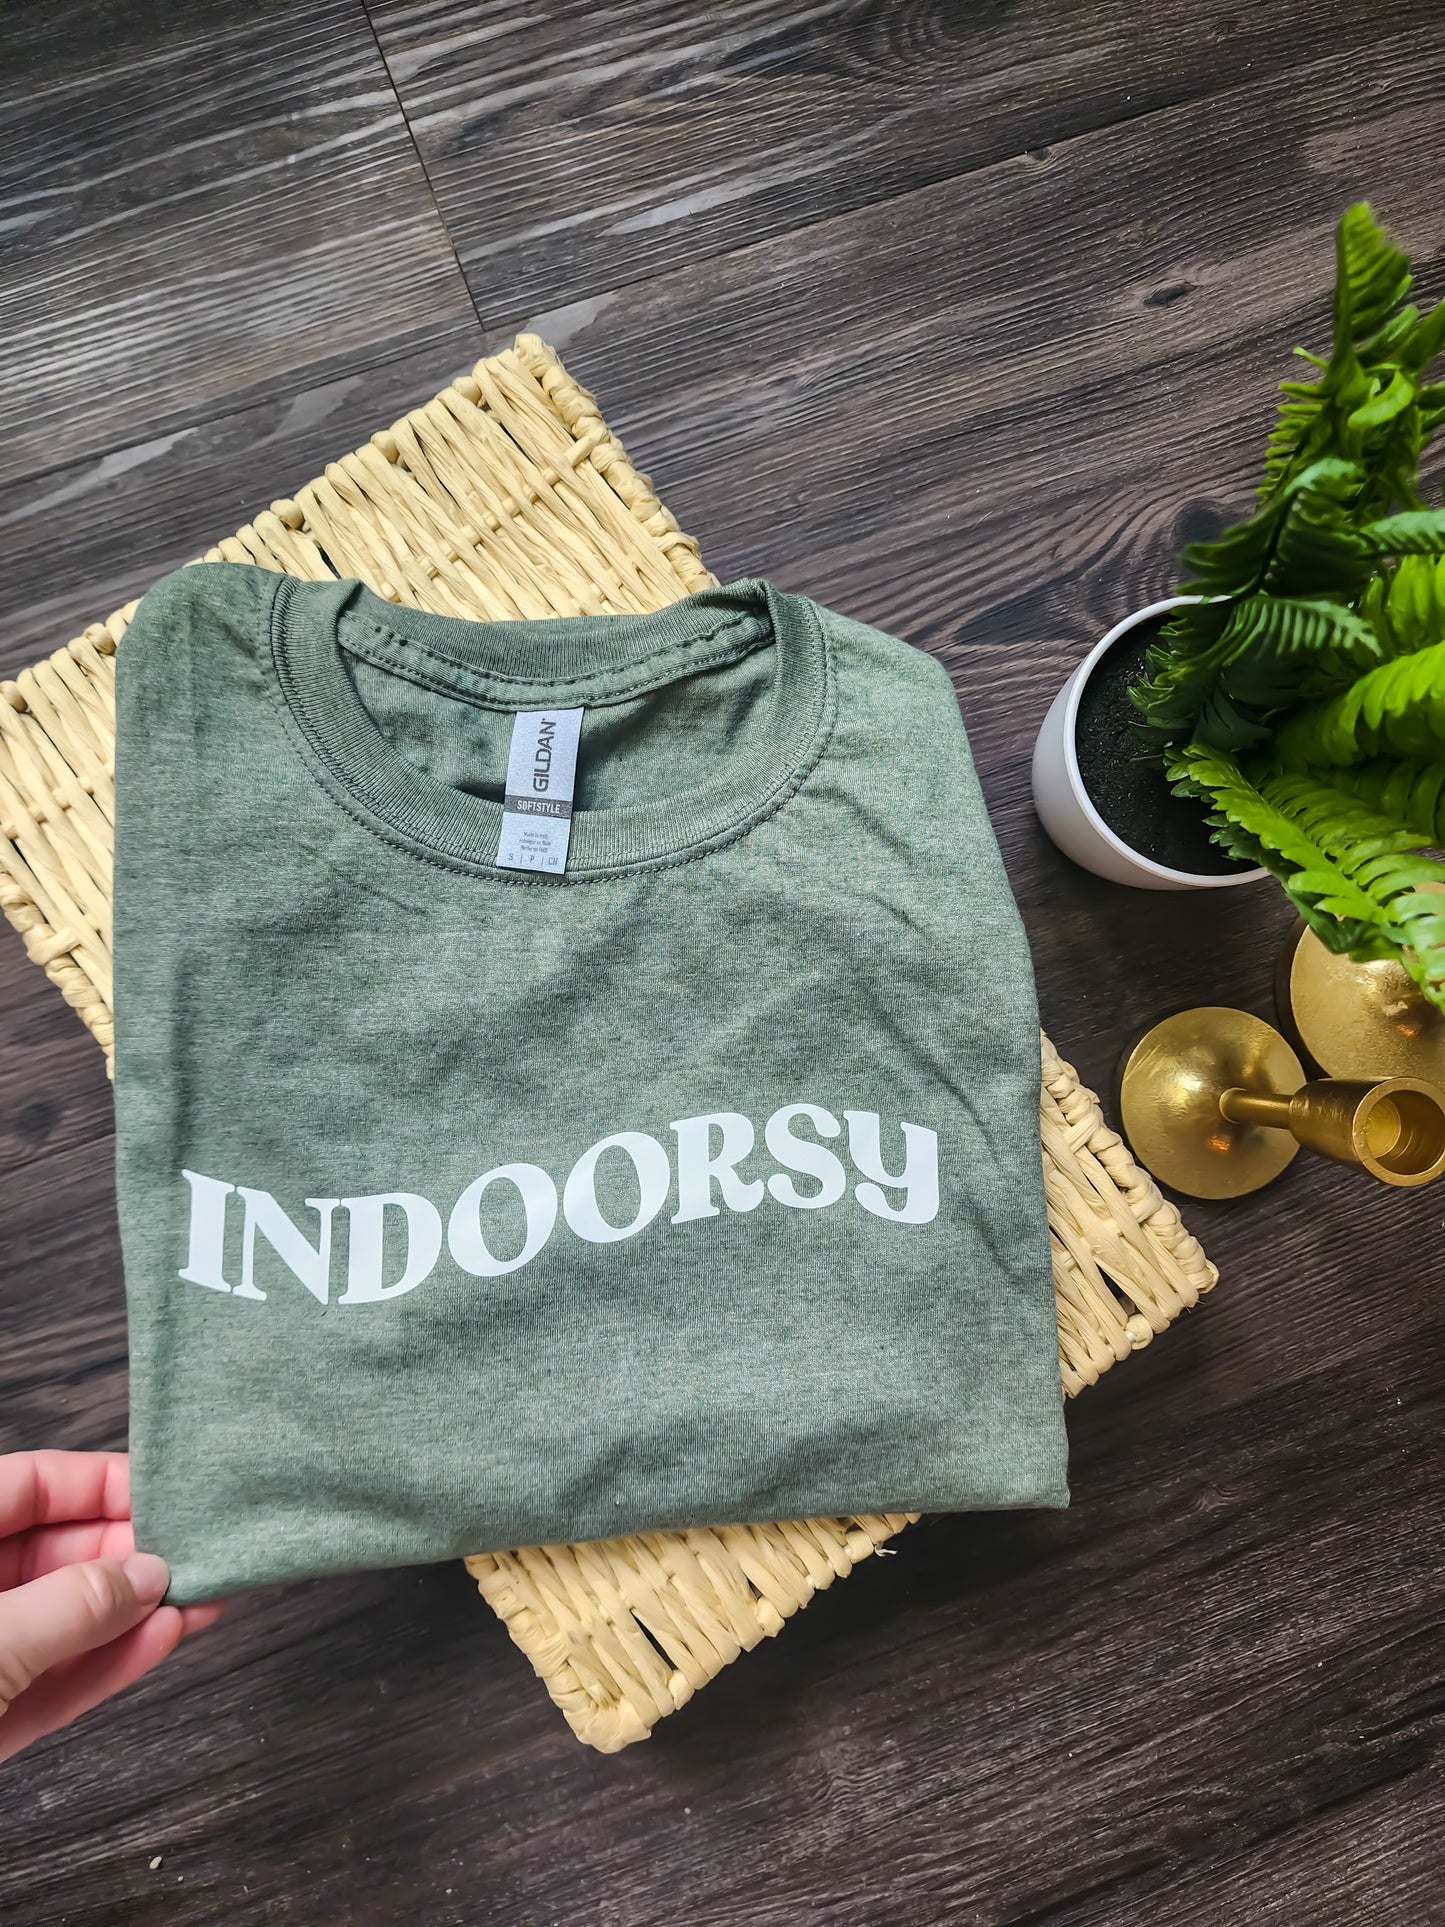 indoorsy tshirt